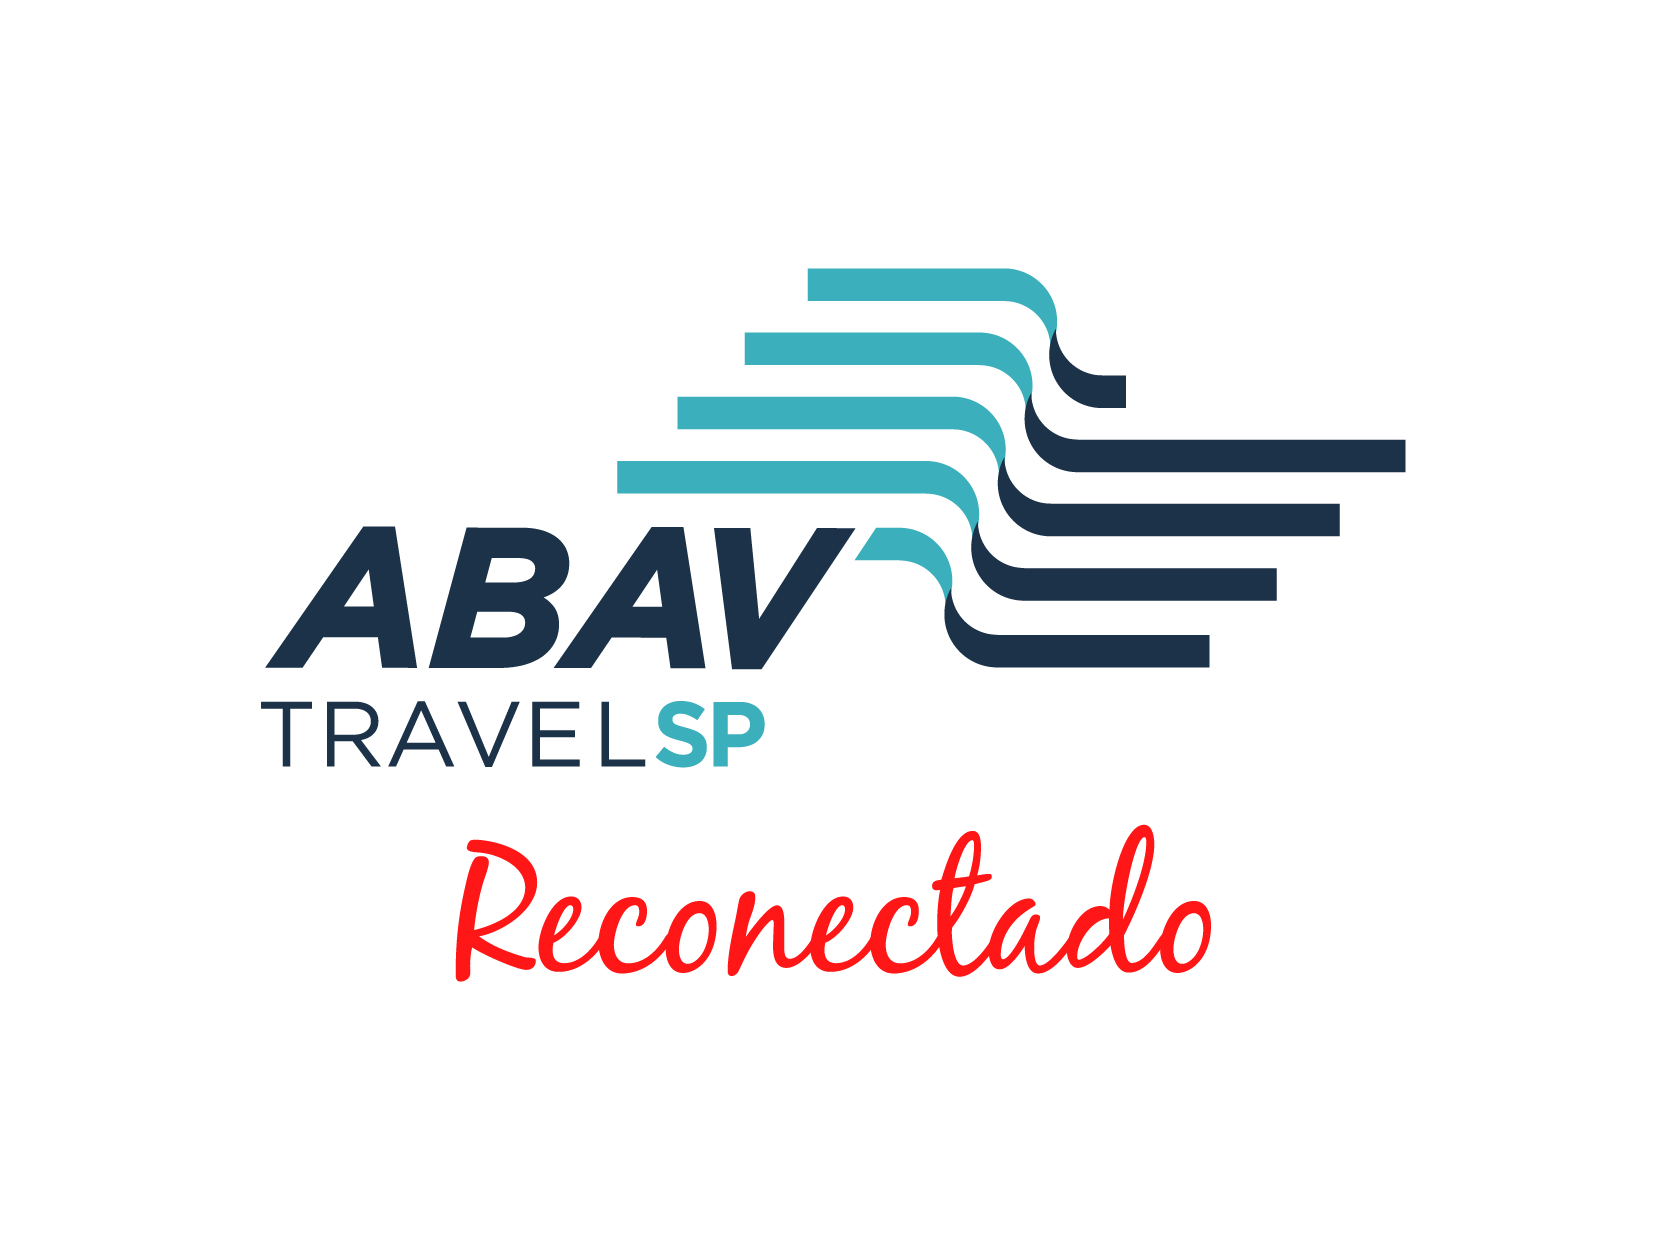 abav-travel-sp-mais-reconectado-ID